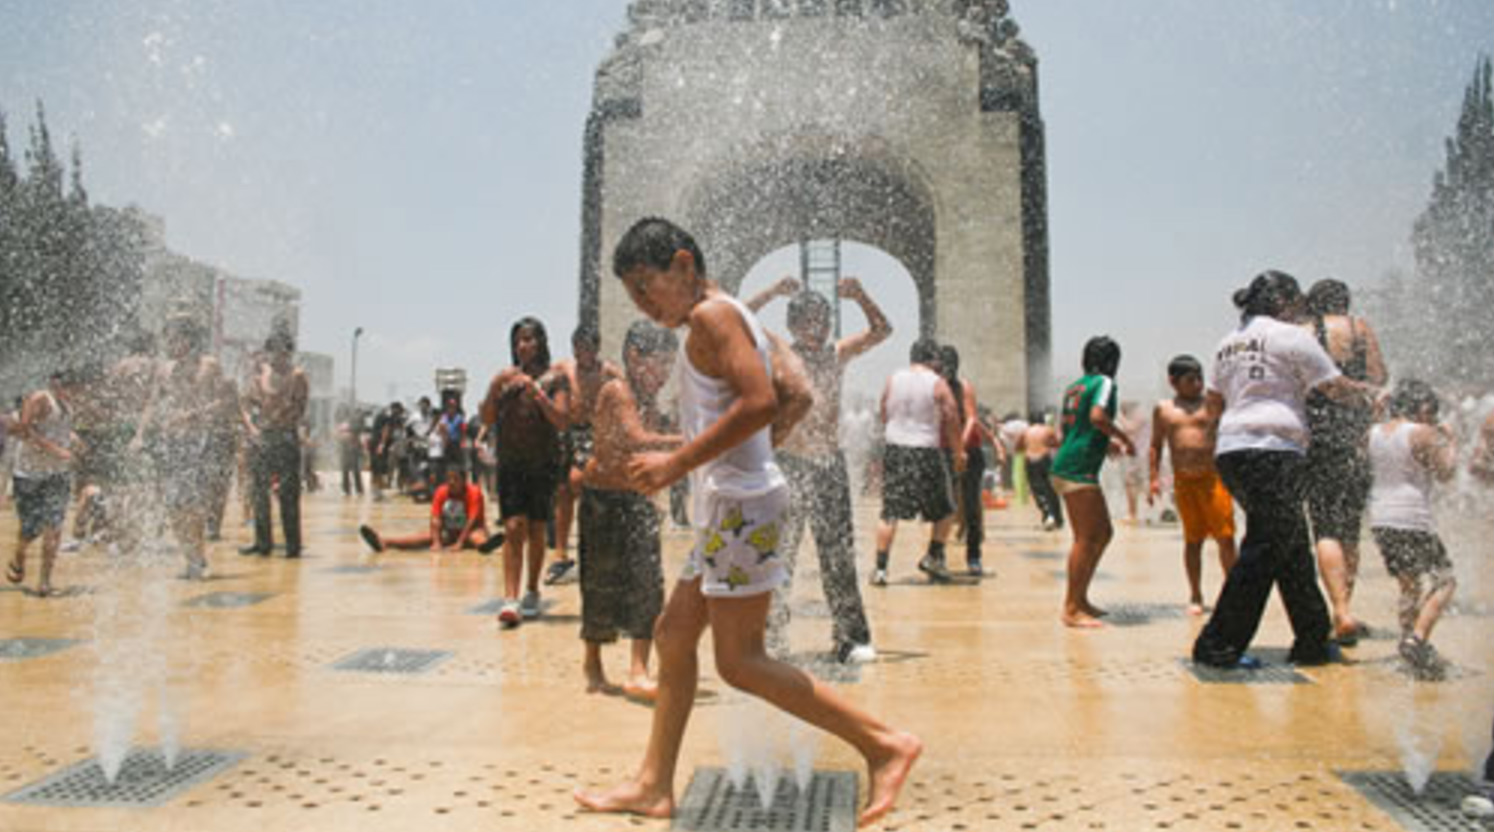 Los mexicanos se bañan más que cualquier otra persona en el mundo